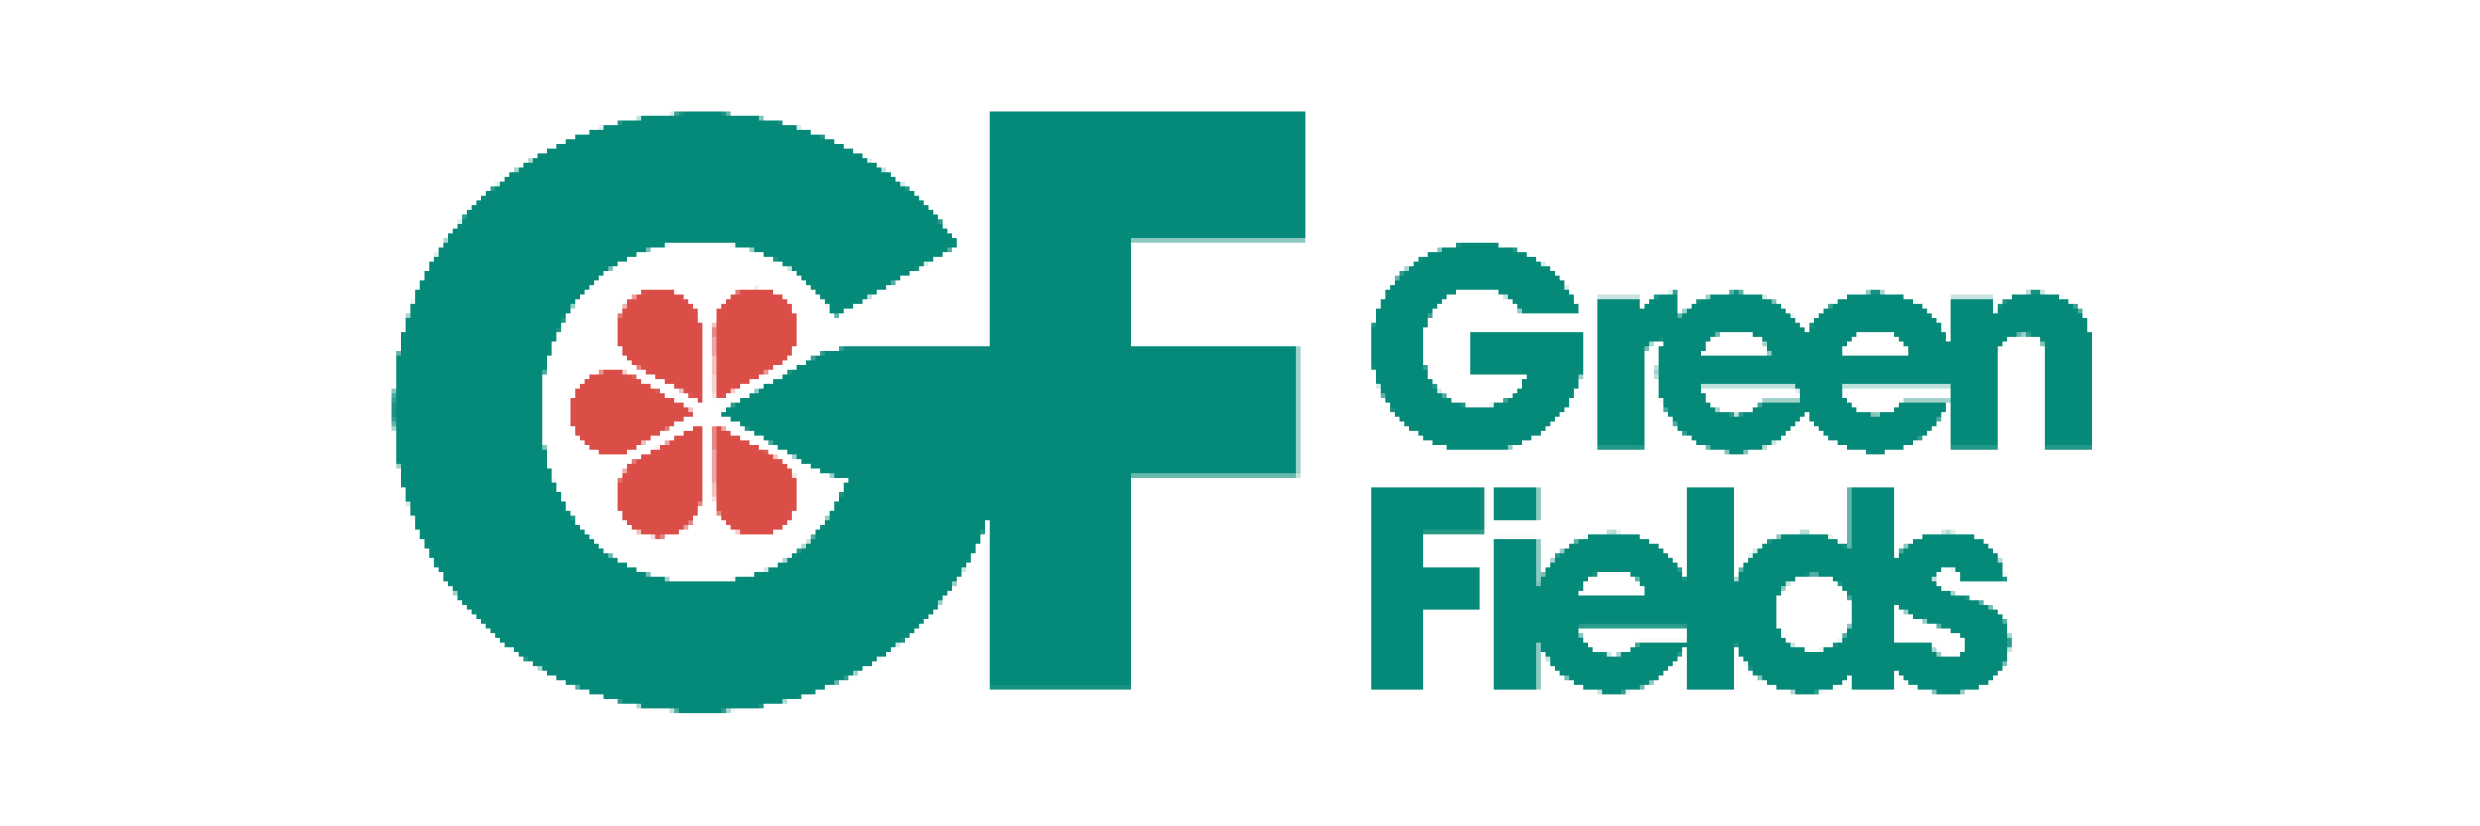 Greenfields – Операционный прогноз по дням на 12 недель